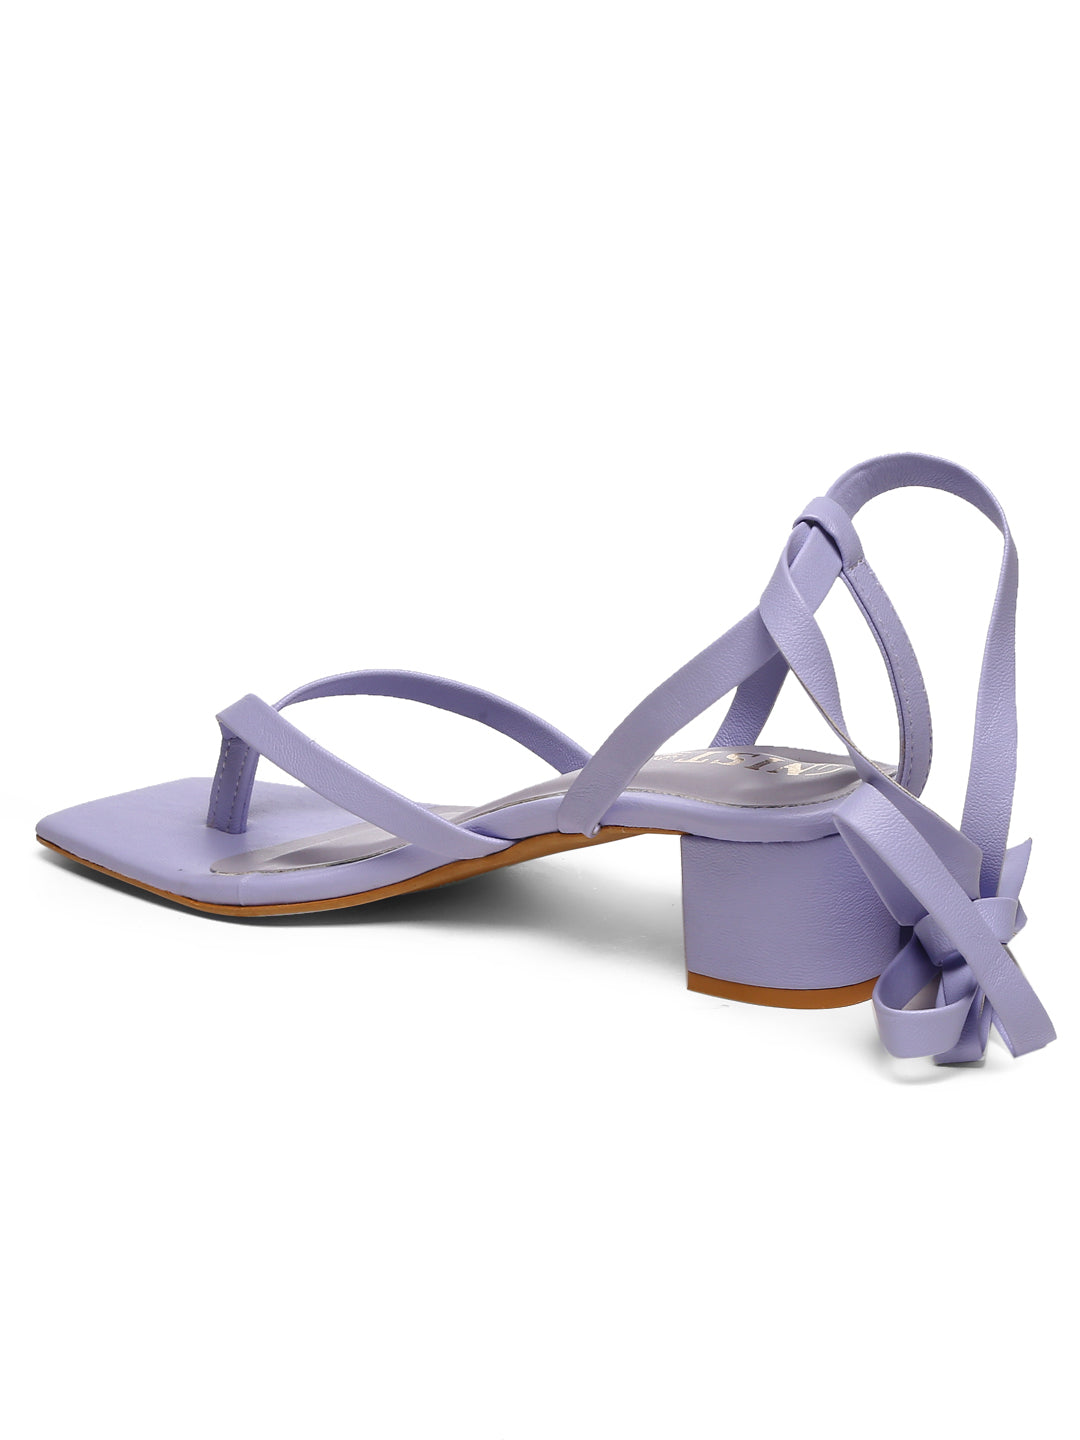 GNIST Lavender Trendy Tie up Block Heel Sandal